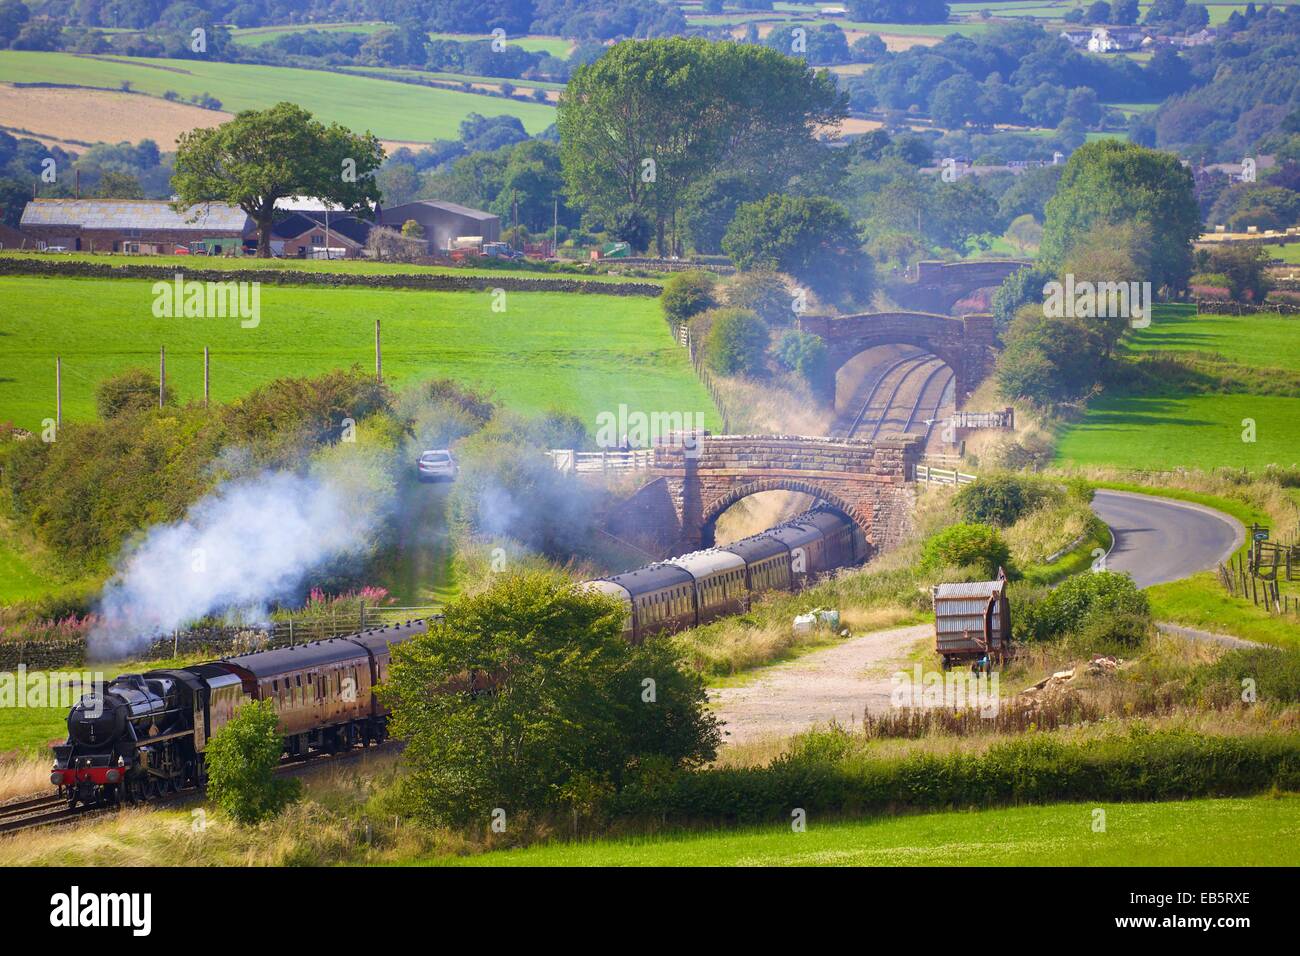 Le Sherwood Forester train à vapeur. Grange haute, ferme, s'installer à Carlisle Langwathby ligne de chemin de fer, Eden Valley, Cumbria, Angleterre. Banque D'Images